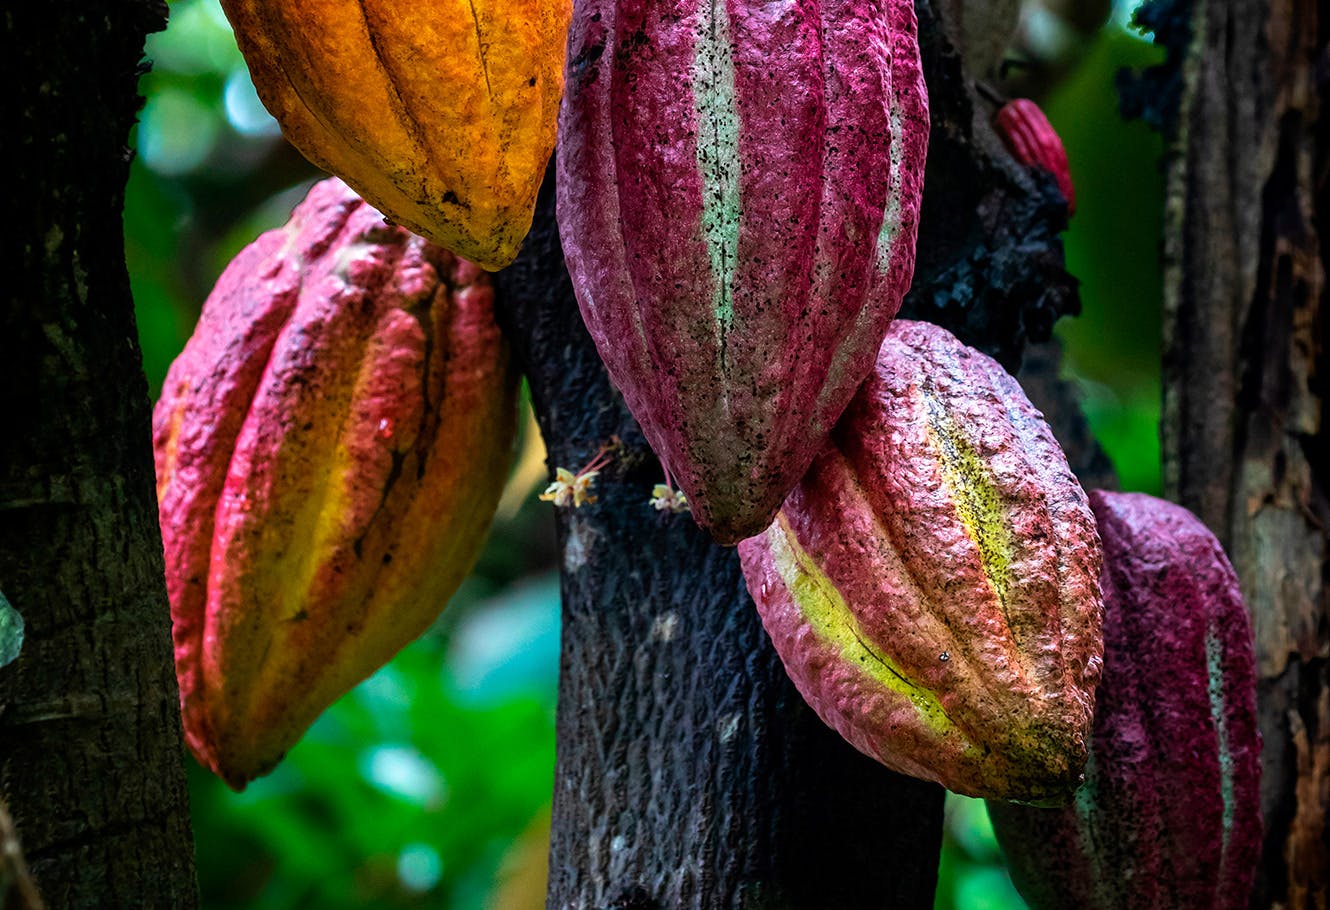 Cacaoyer aussi appelé cacaotier.